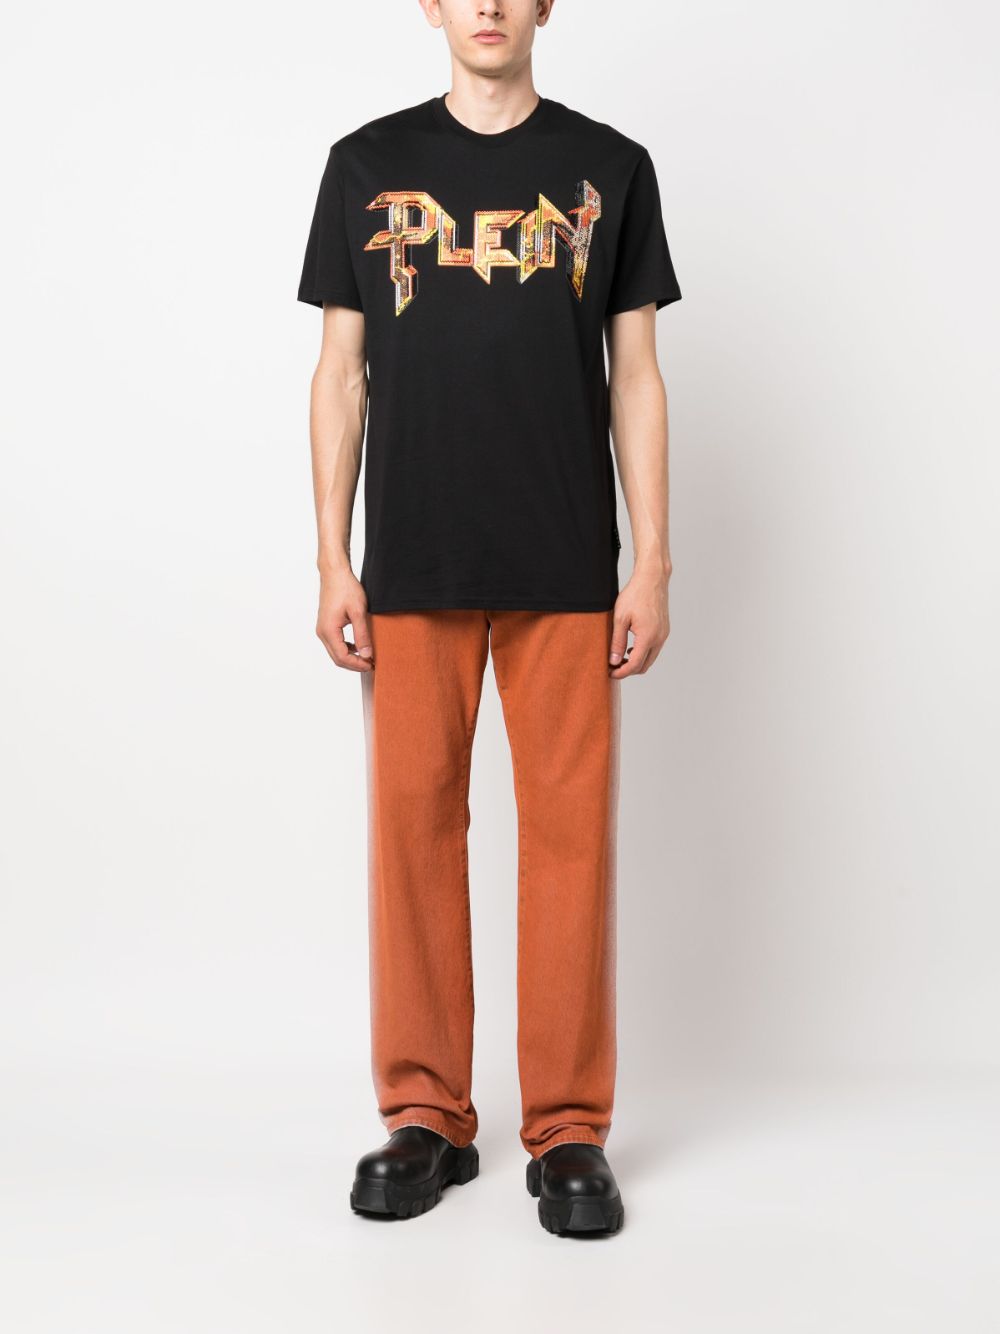 Philipp Plein T-shirt verfraaid met edelstenen - Zwart